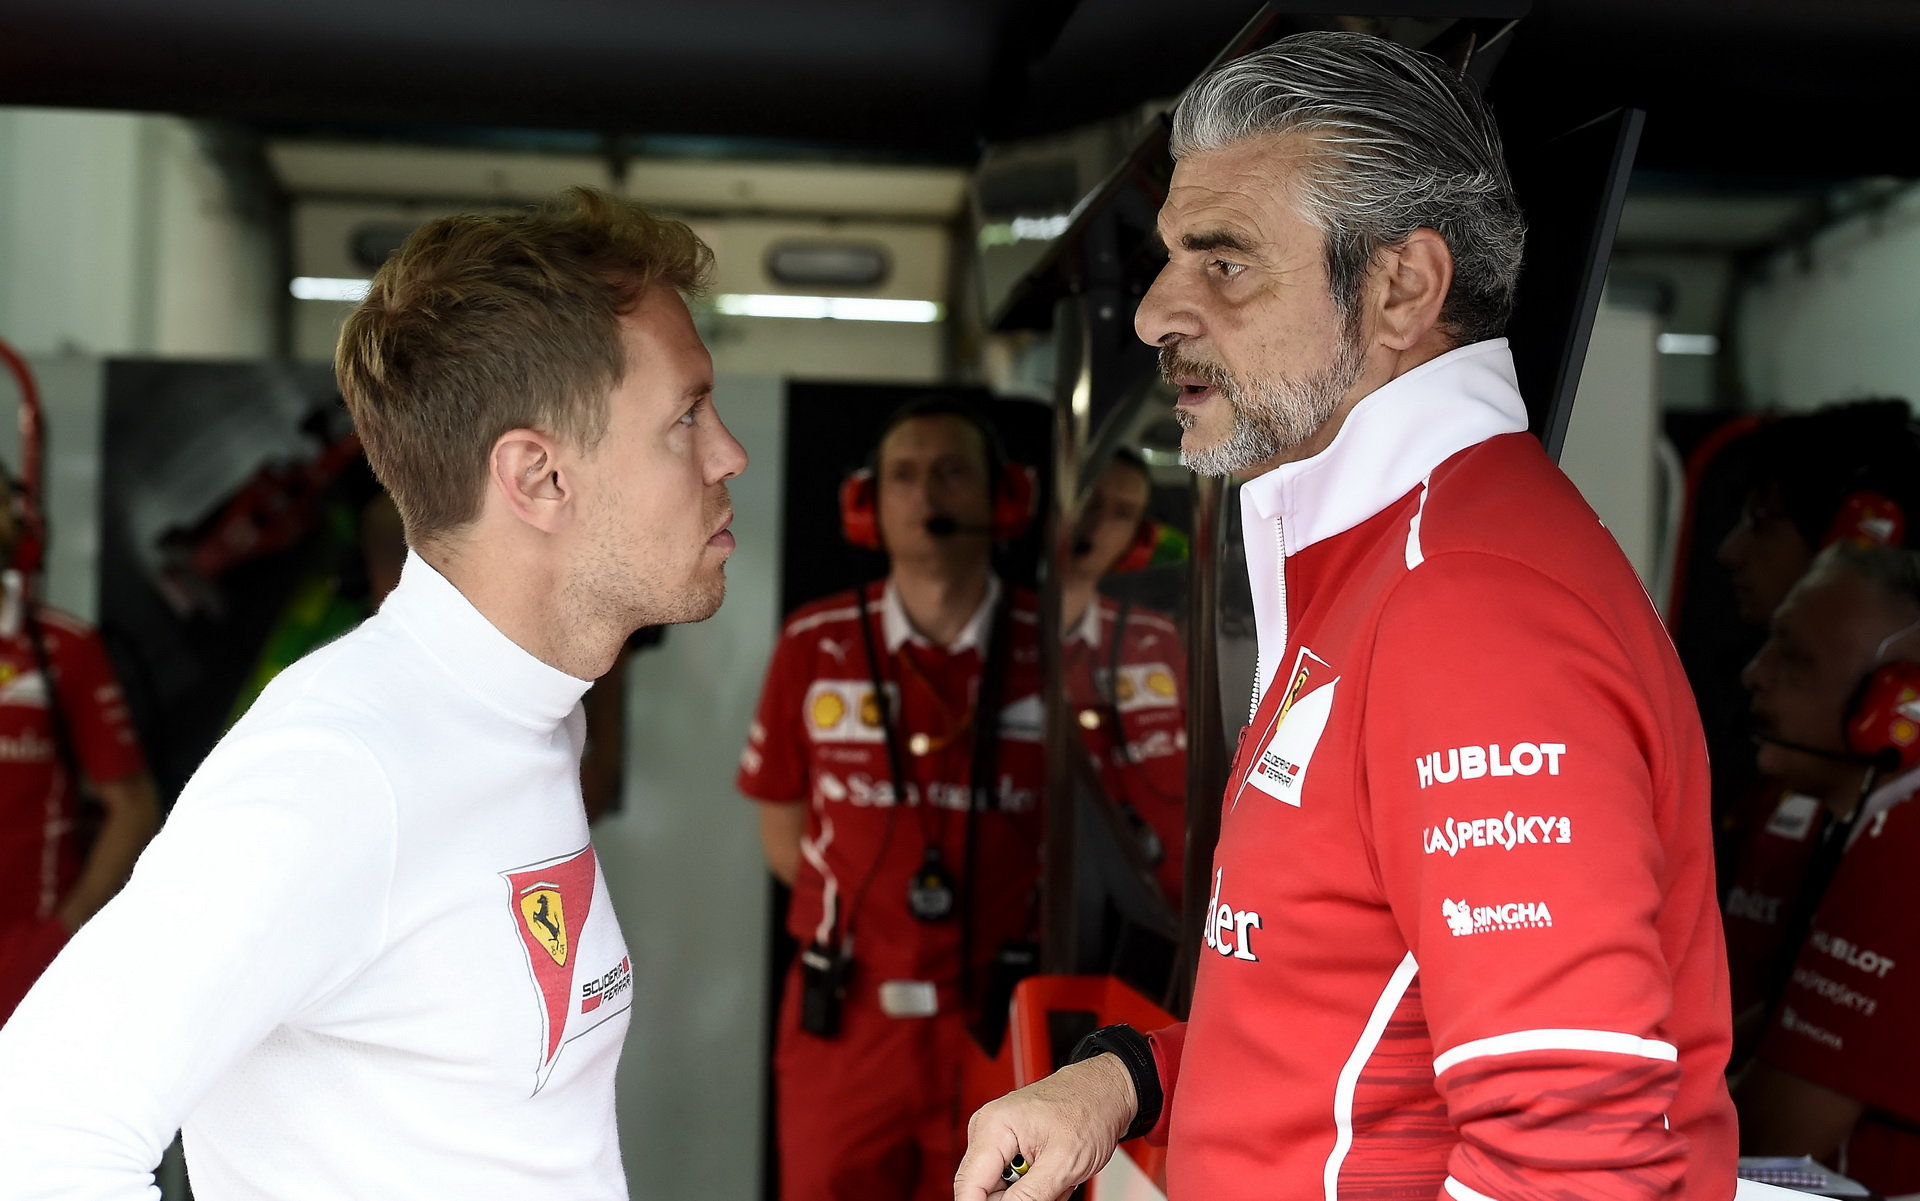 Sebastian Vettel v Baku cítil, že Ferrari zklamal, protože pod návalem emocí udělal zbytečnou chybu, na kterou doplatili všichni